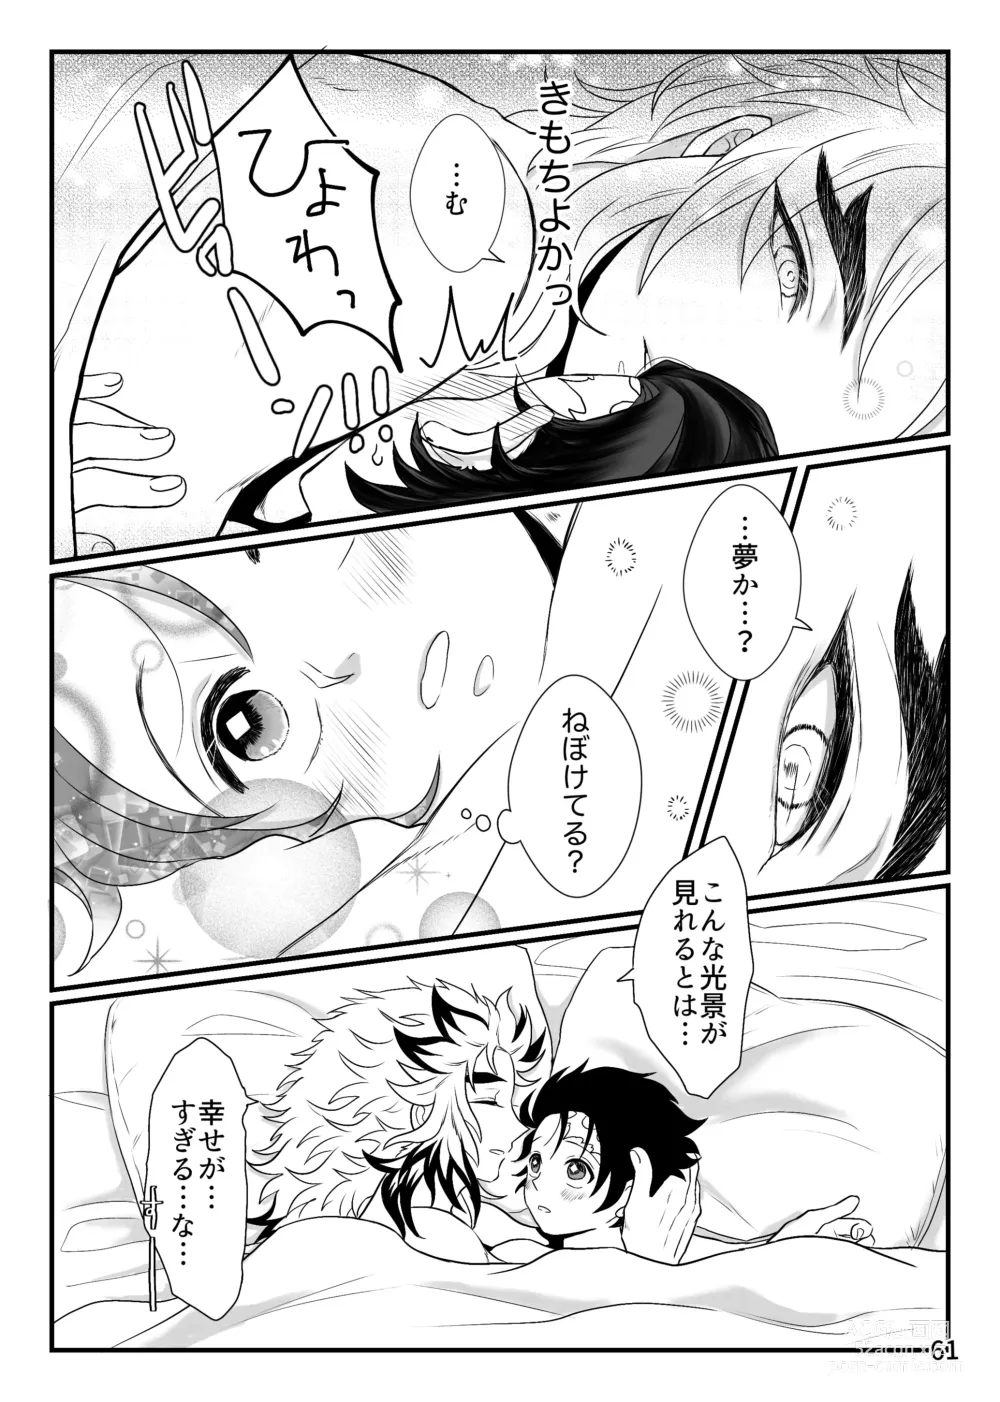 Page 61 of doujinshi Kono Gekijou o Shirazu ni